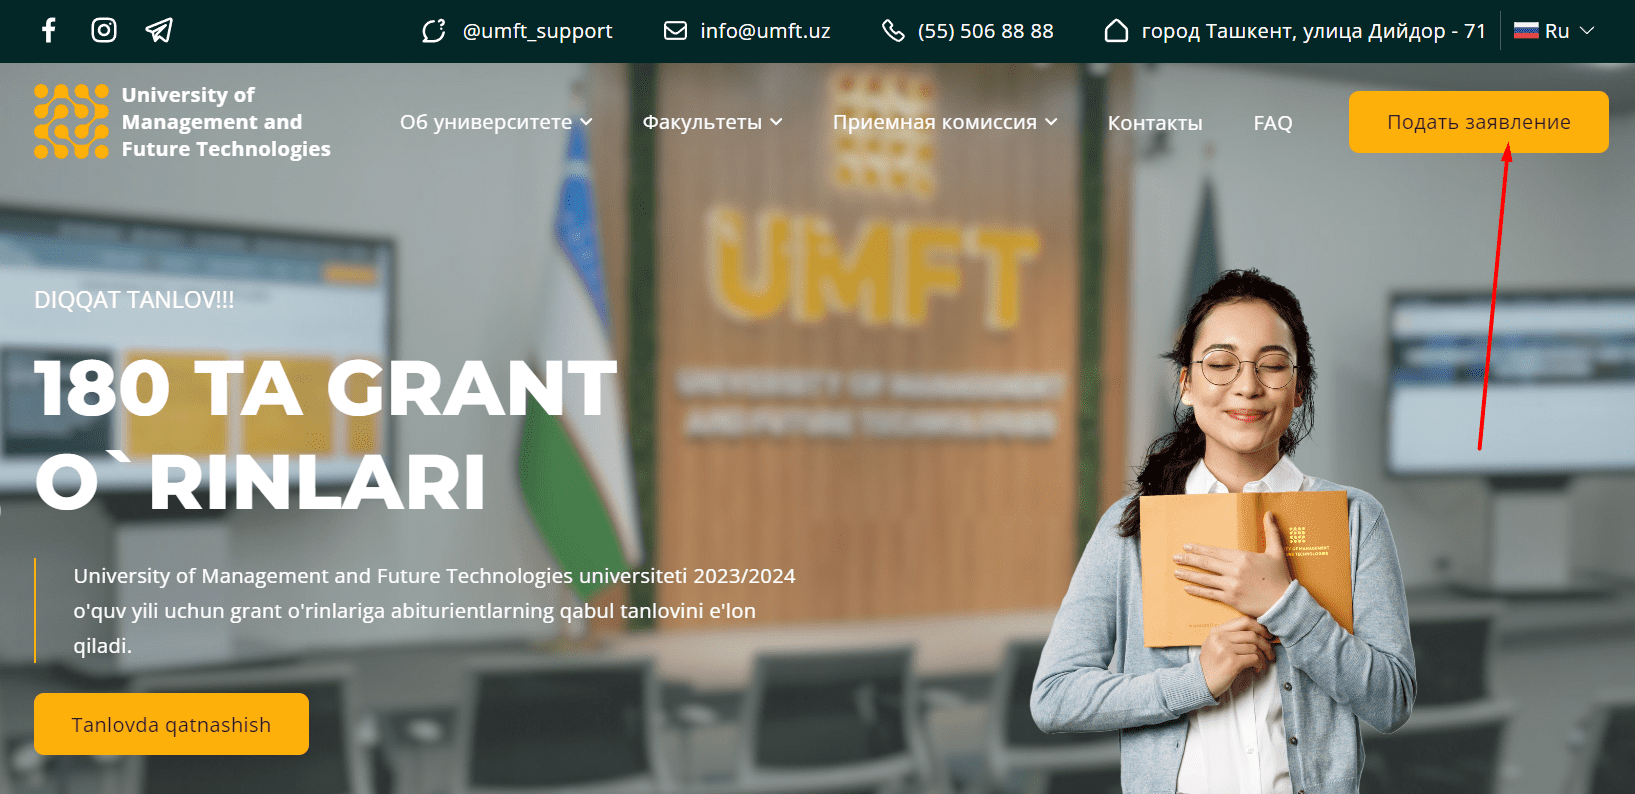 Университет менеджмента и современных технологий (umft.uz)